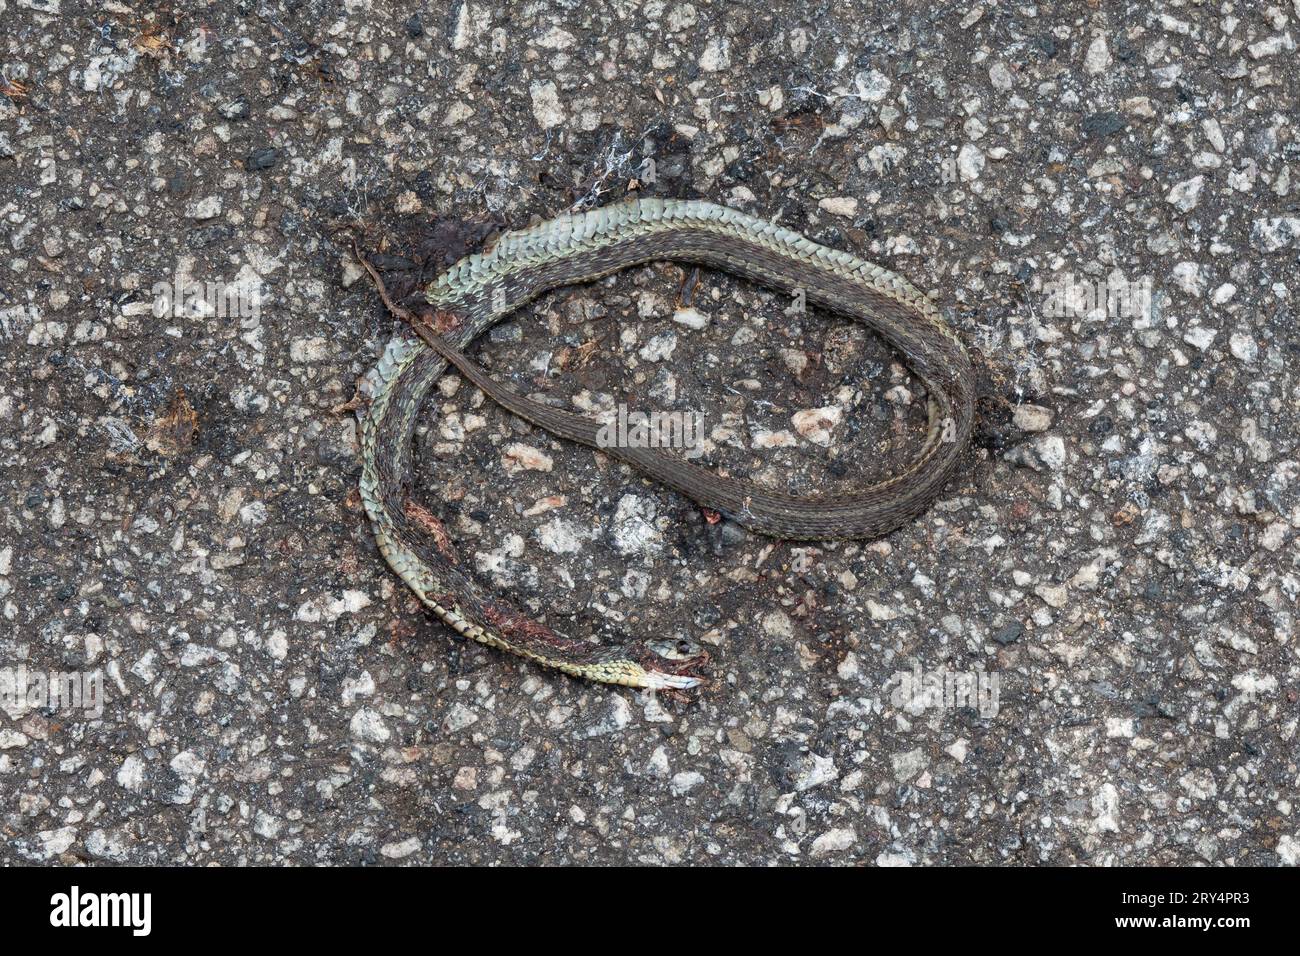 Un serpente della giarrettiera orientale morto, Thamnophis sirtalis sirtalis, investito da un veicolo su una vecchia strada asfaltata. Foto Stock